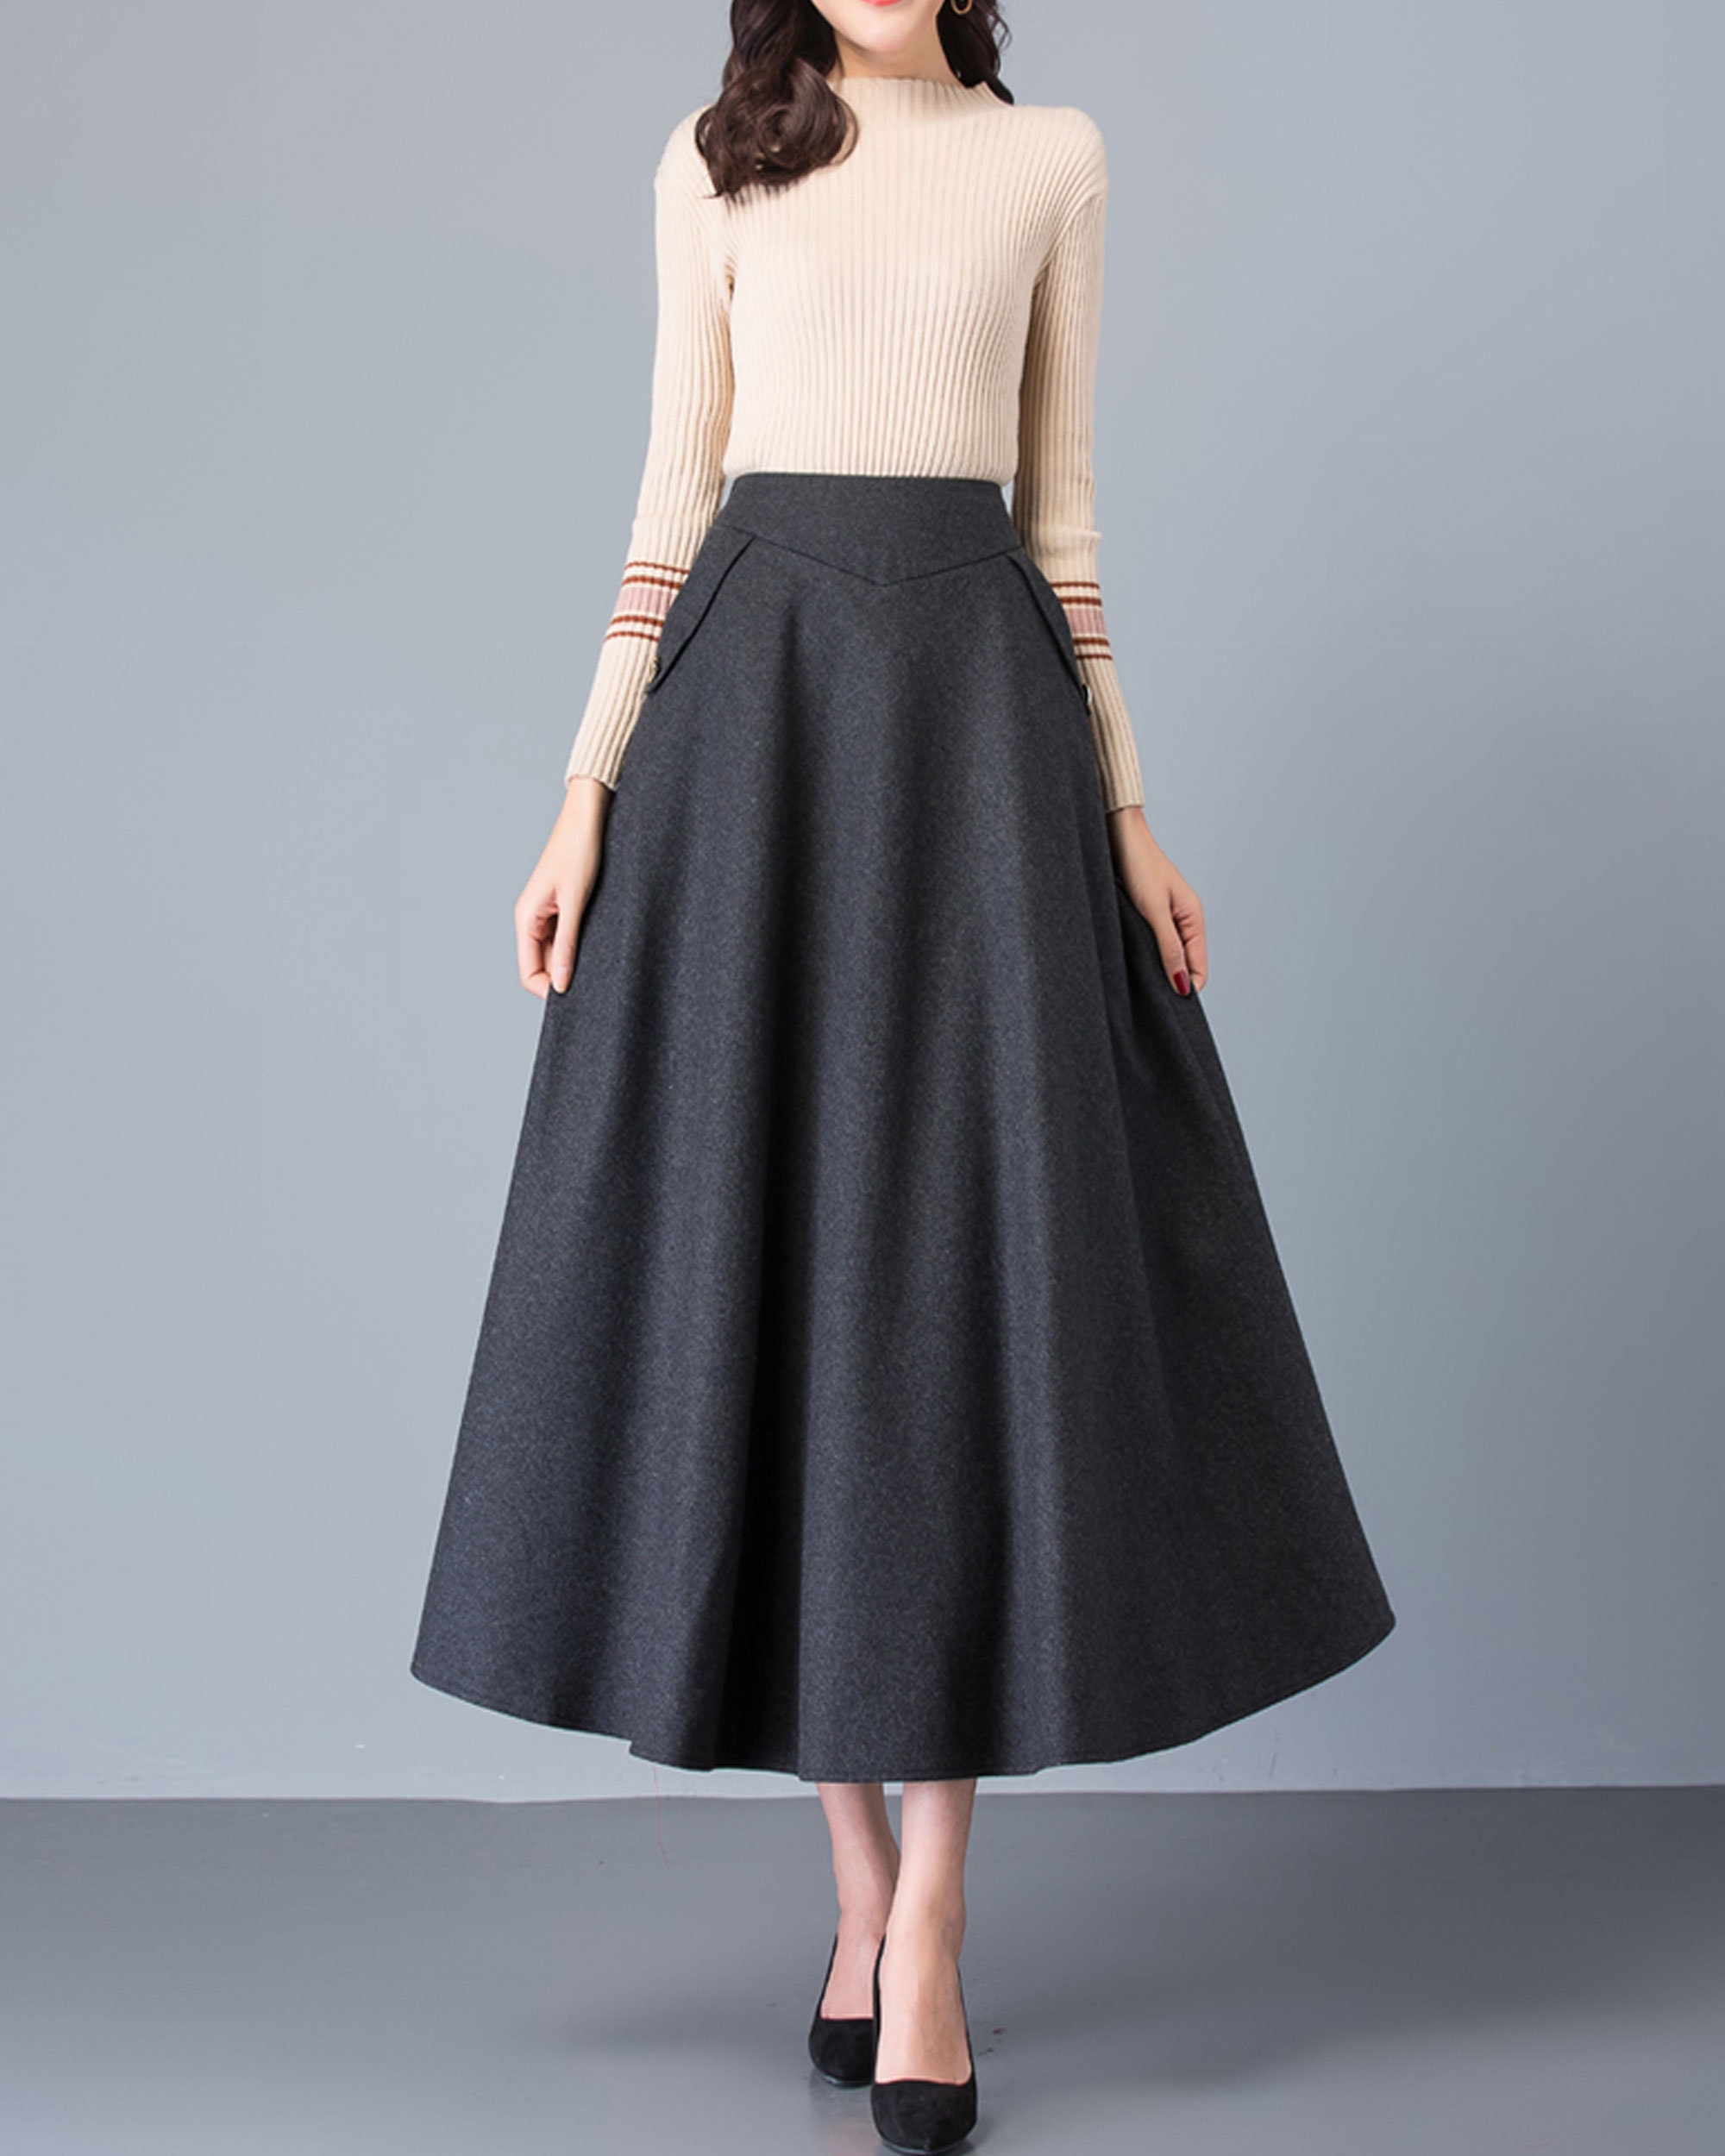 Long Skirt Wool Skirt Midi Skirt Winter Skirt Brown Skirt - Etsy